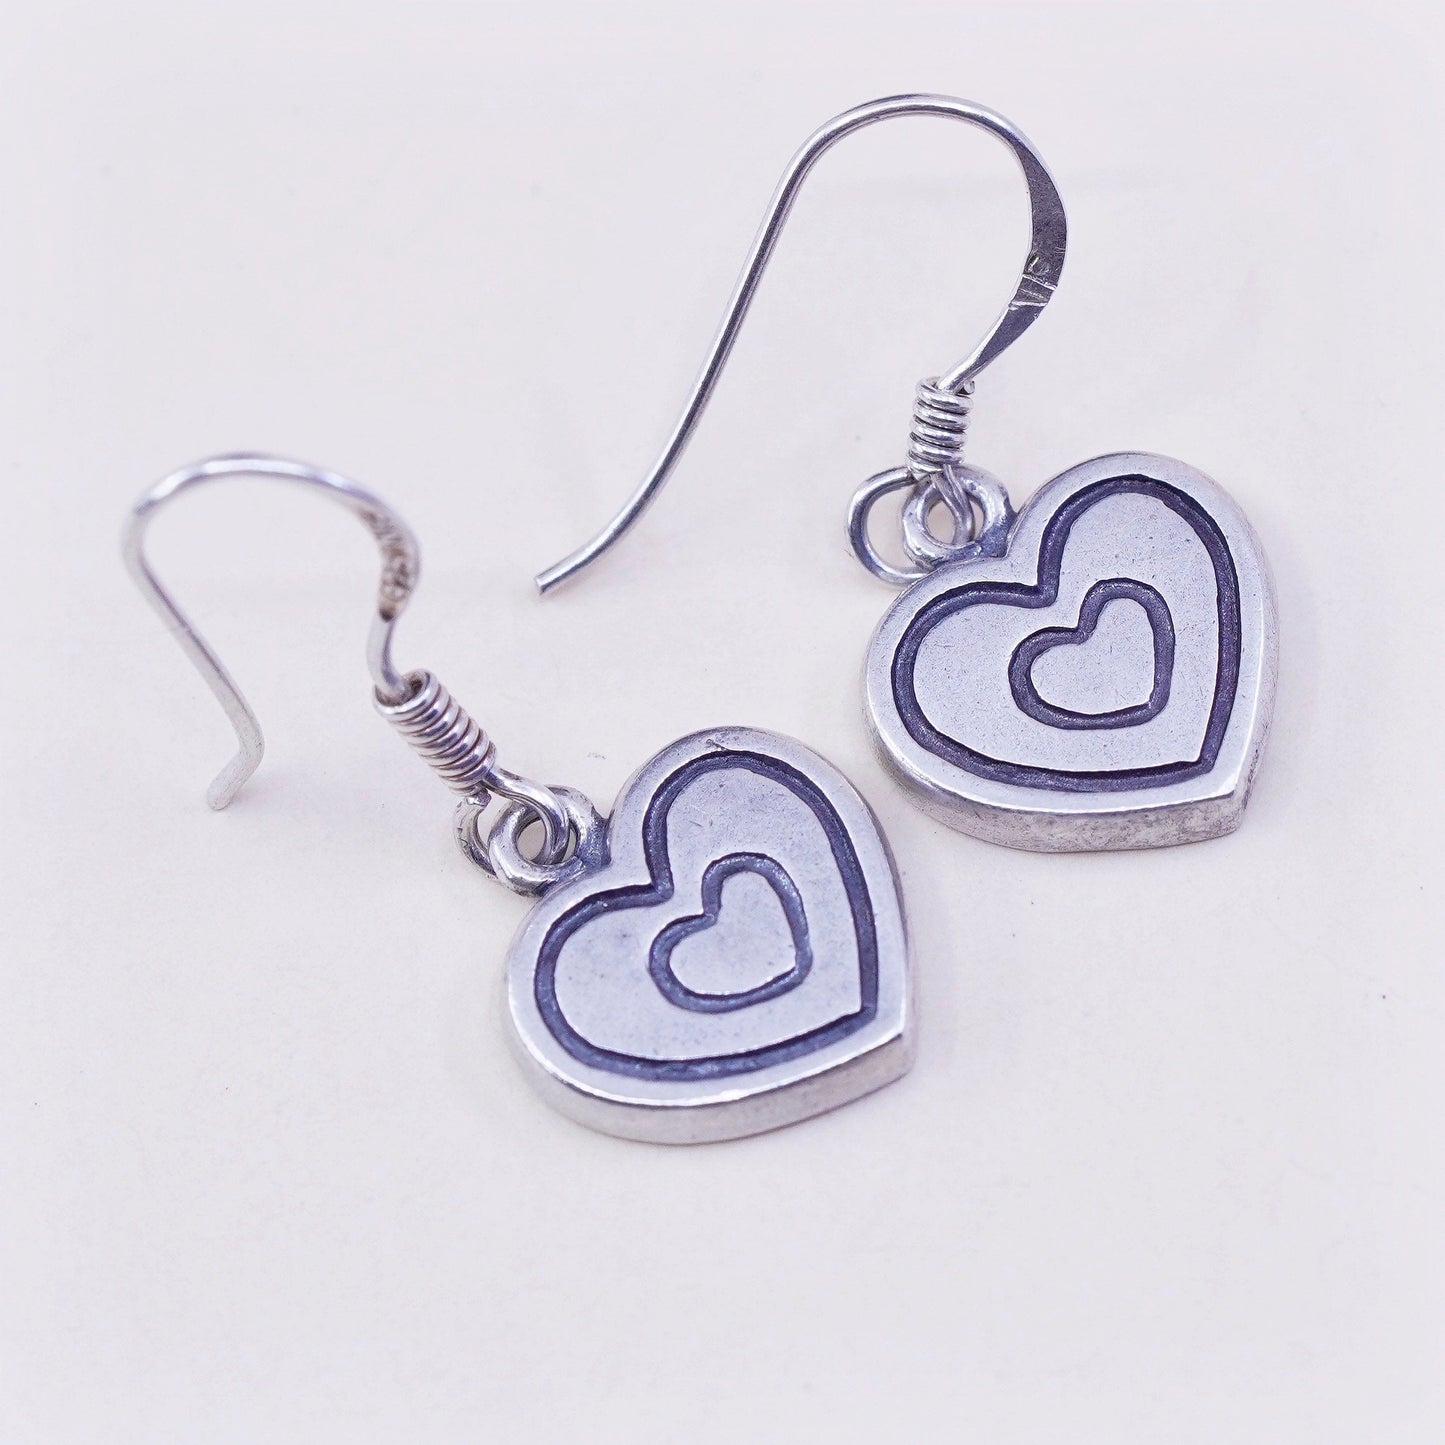 Vintage sterling silver handmade earrings, 925 heart dangles, stamped 925 NF